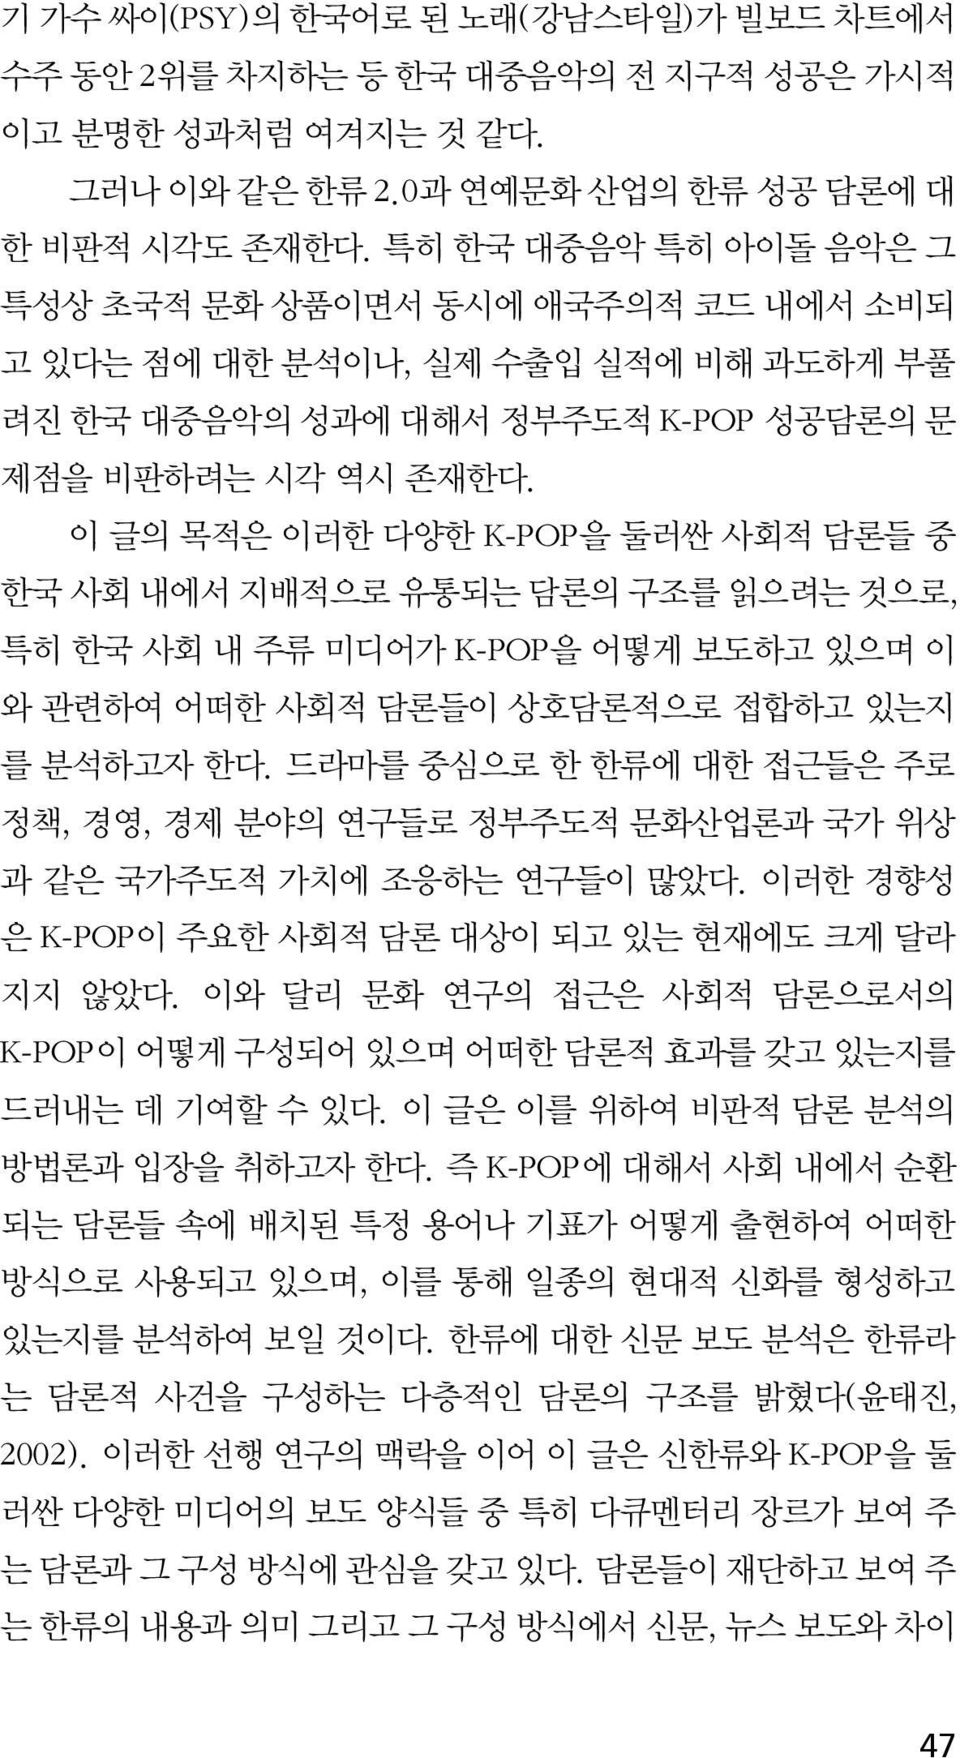 이 글의 목적은 이러한 다양한 K-POP을 둘러싼 사회적 담론들 중 한국 사회 내에서 지배적으로 유통되는 담론의 구조를 읽으려는 것으로, 특히 한국 사회 내 주류 미디어가 K-POP을 어떻게 보도하고 있으며 이 와 관련하여 어떠한 사회적 담론들이 상호담론적으로 접합하고 있는지 를 분석하고자 한다.